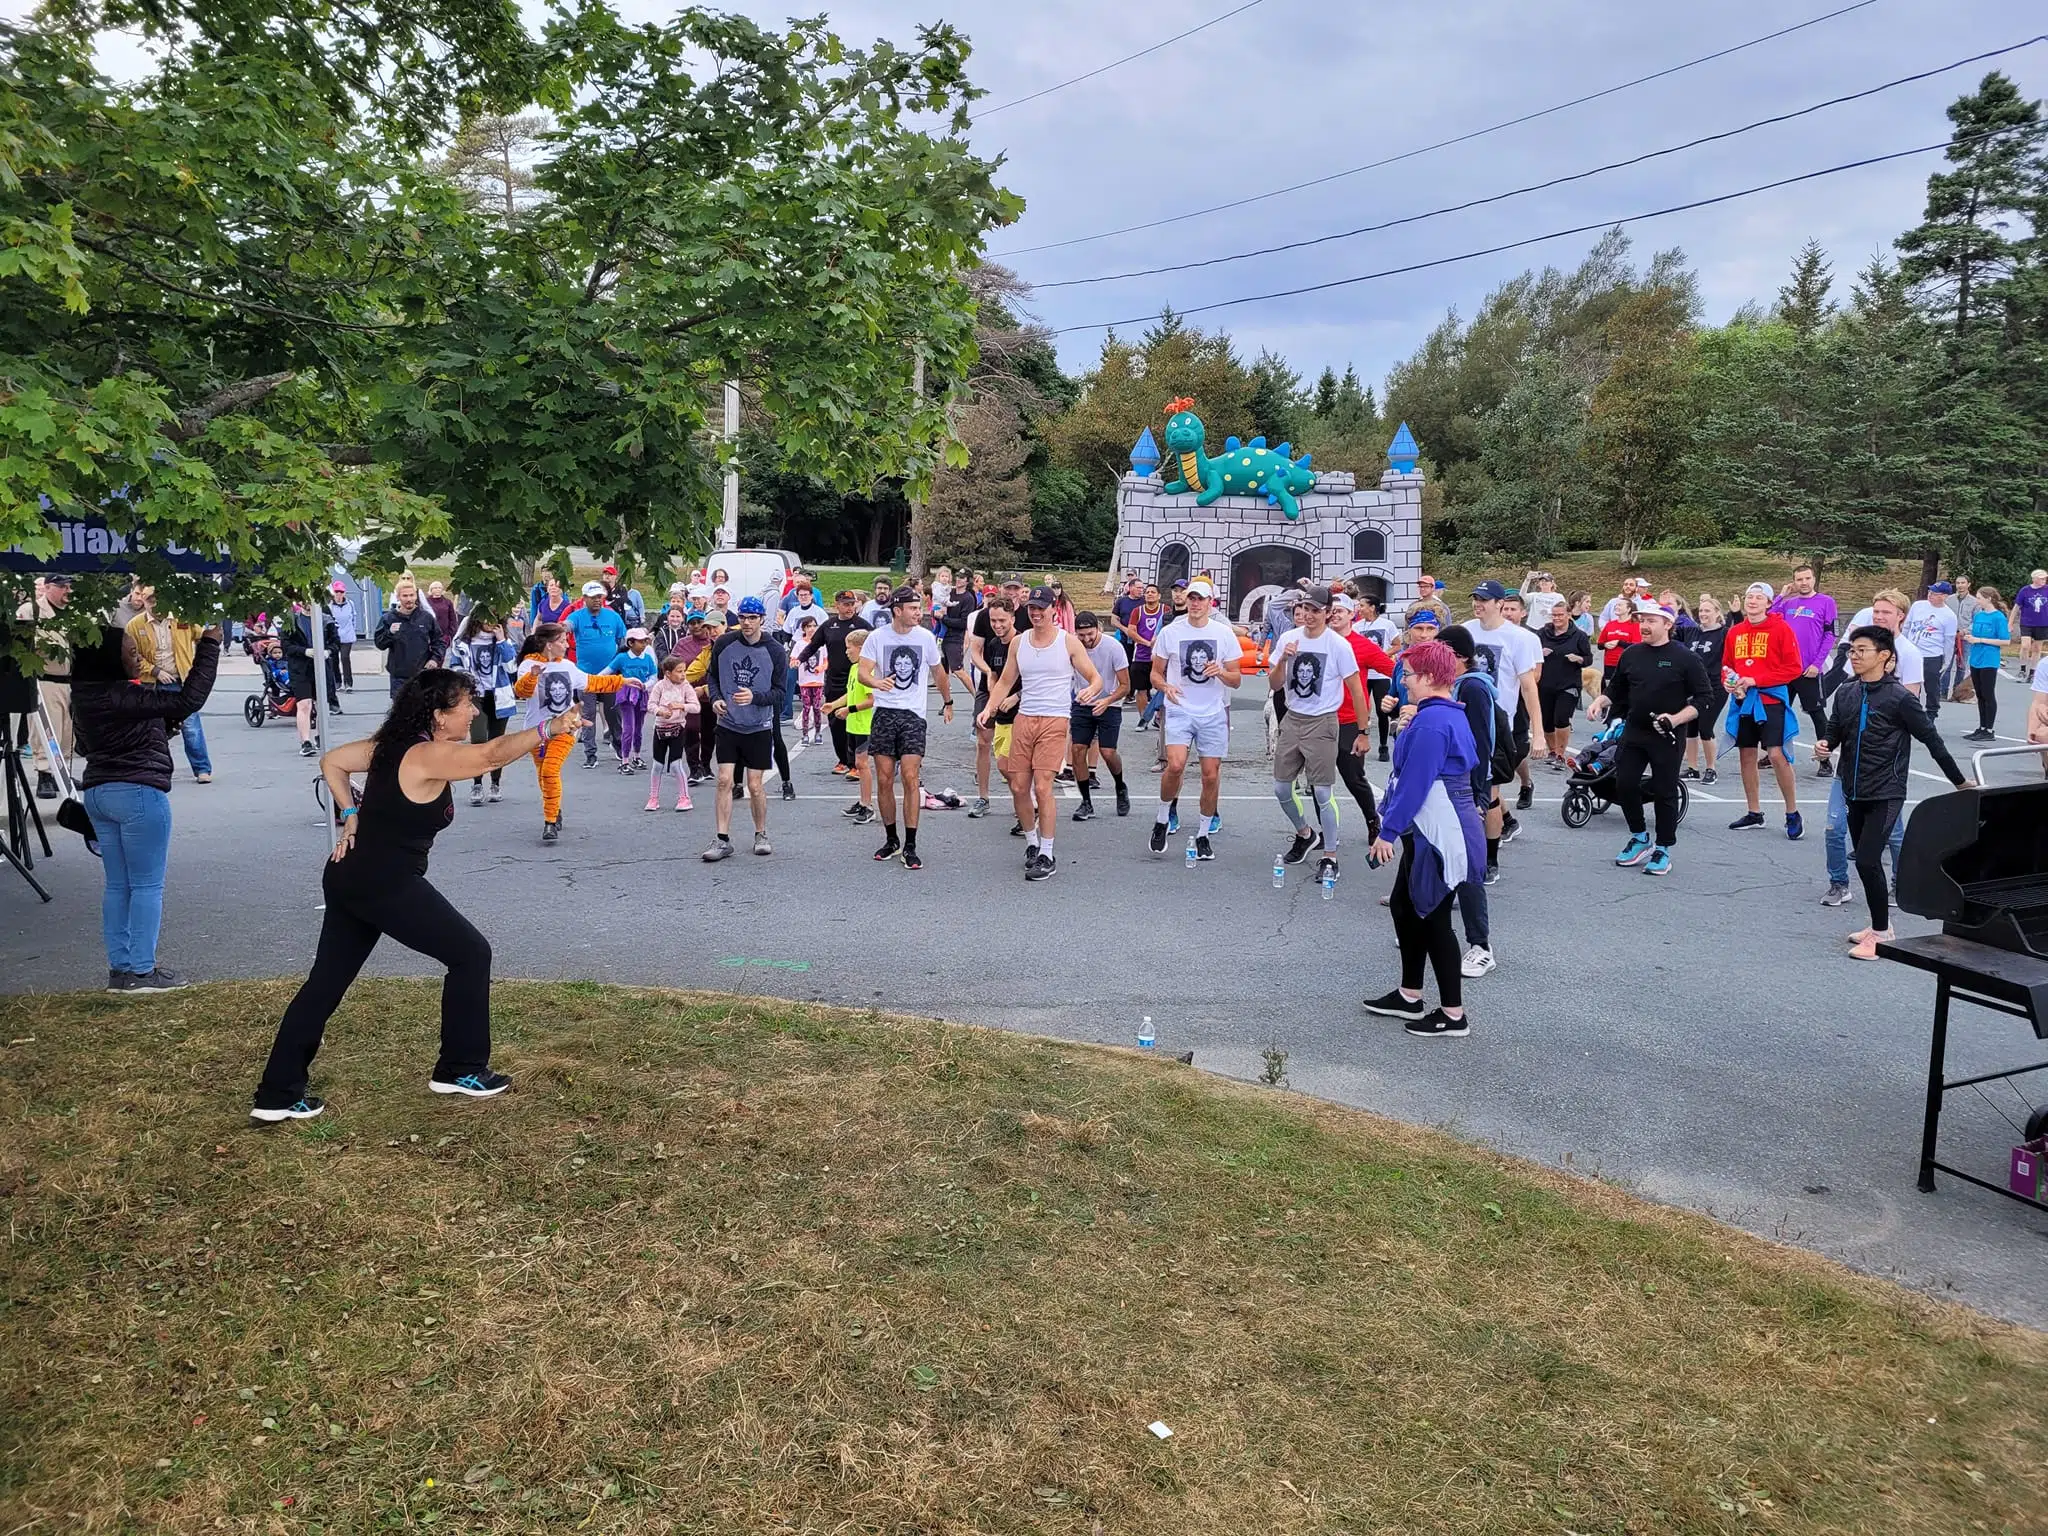 A Big Crowd At The Halifax 2022 Terry Fox Run